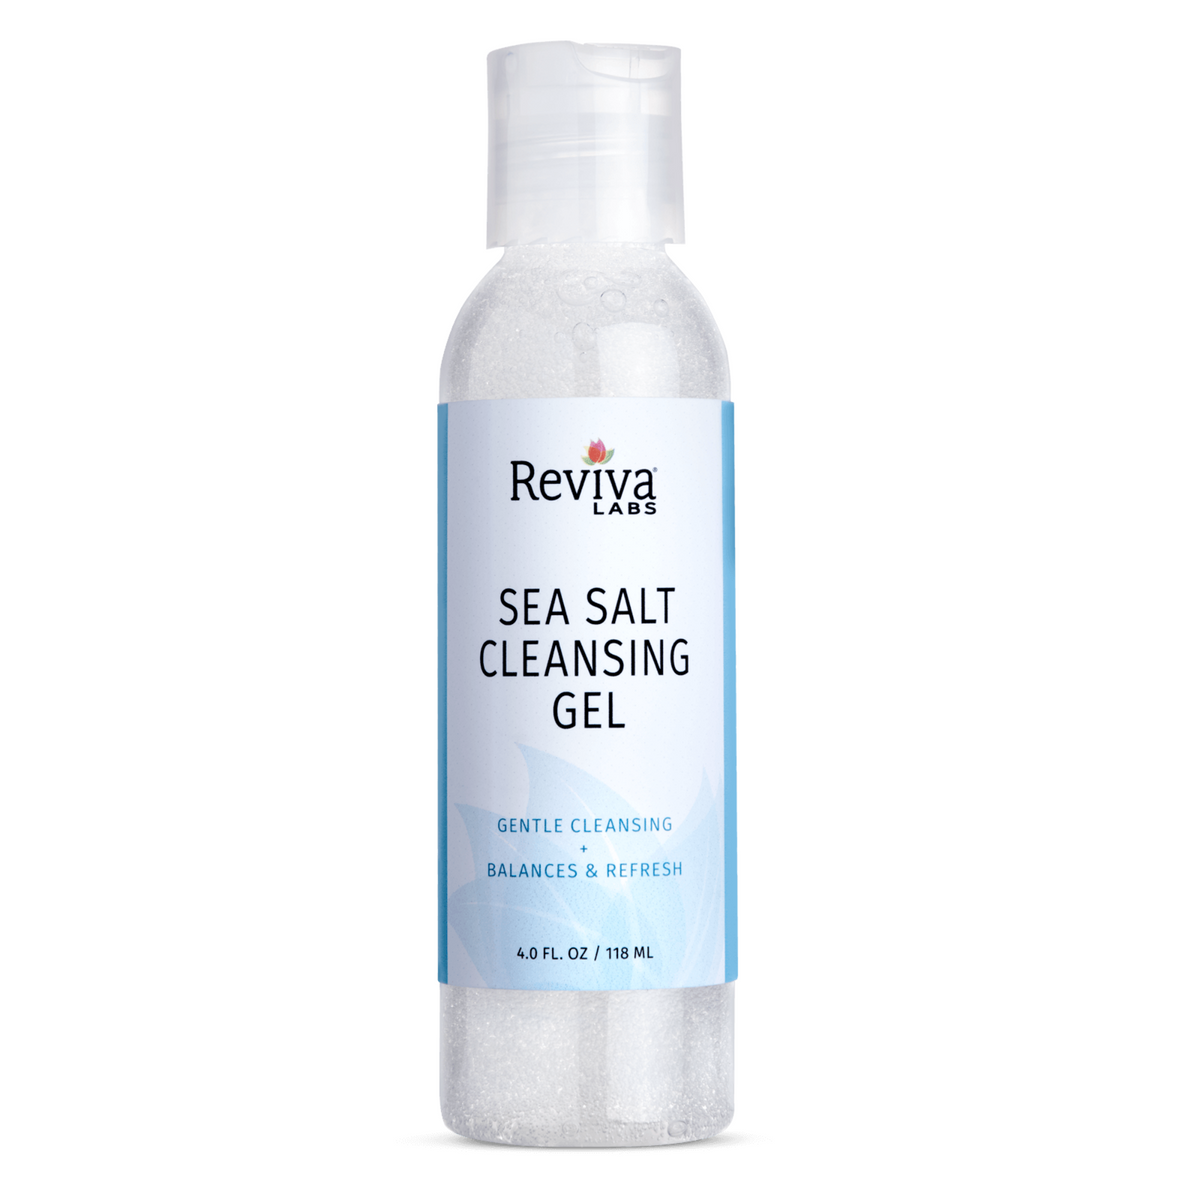 Primary Image of Sea Salt Cleansing Gel